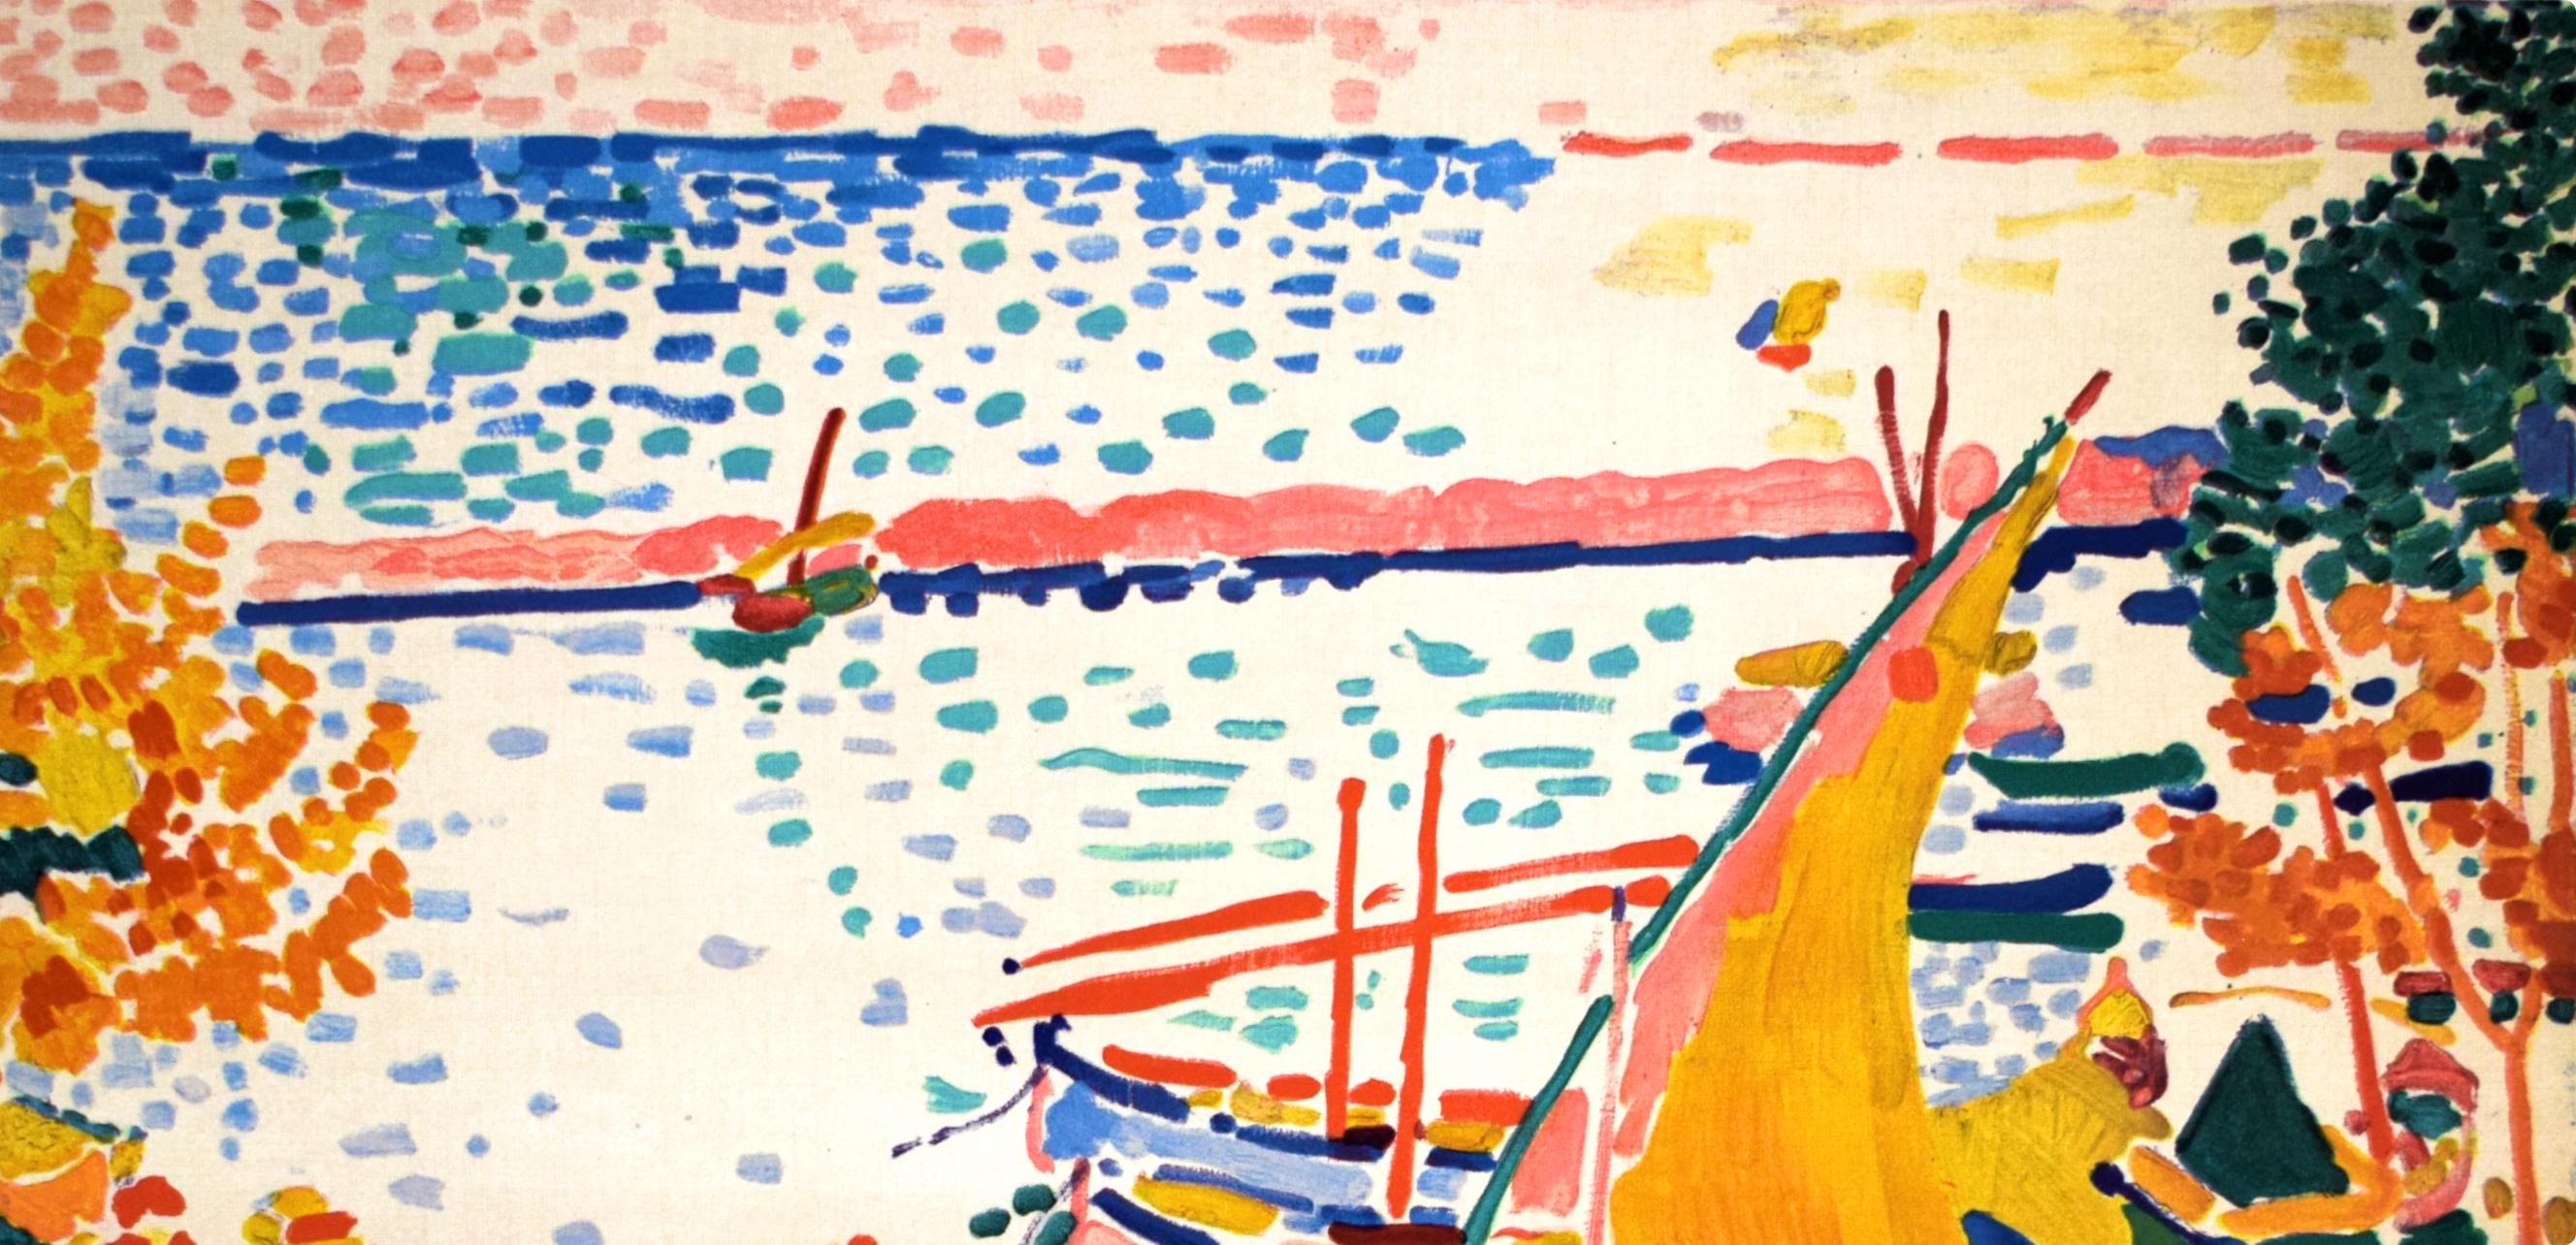 Derain, Port de Collioure, Fauves, The Collective Pierre Lévy (d'après) - Print de André Derain